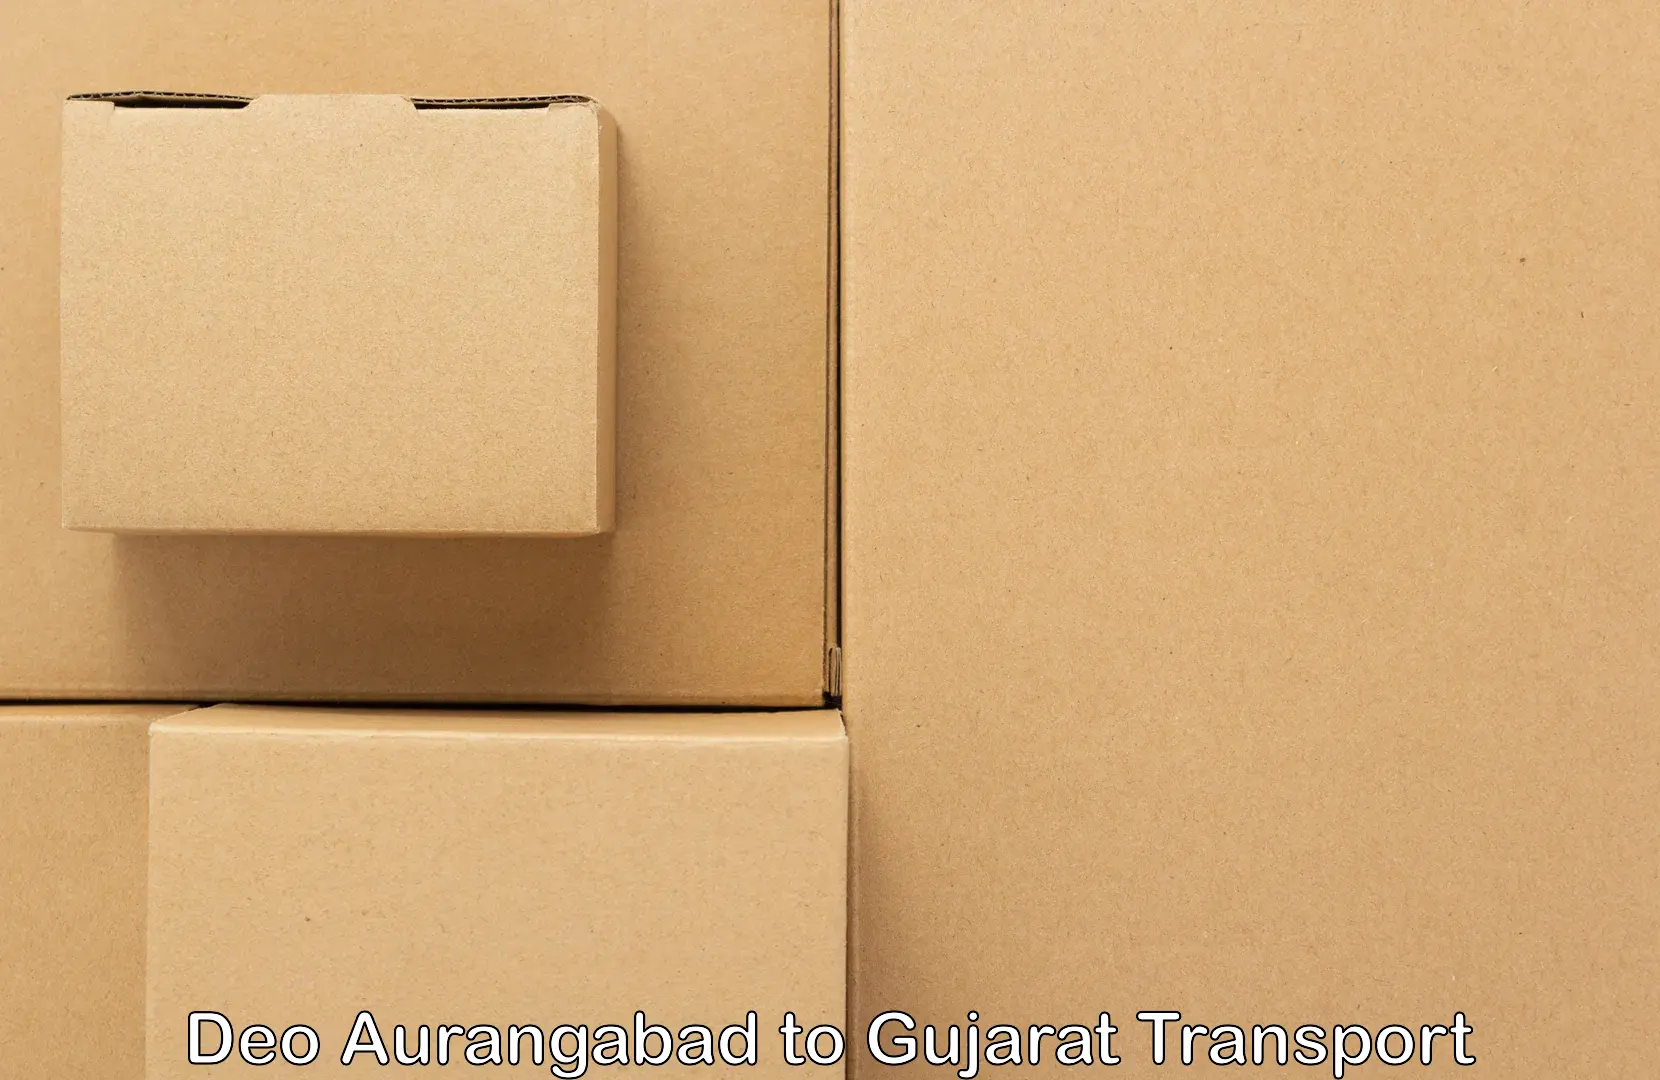 Container transport service Deo Aurangabad to Kadodara